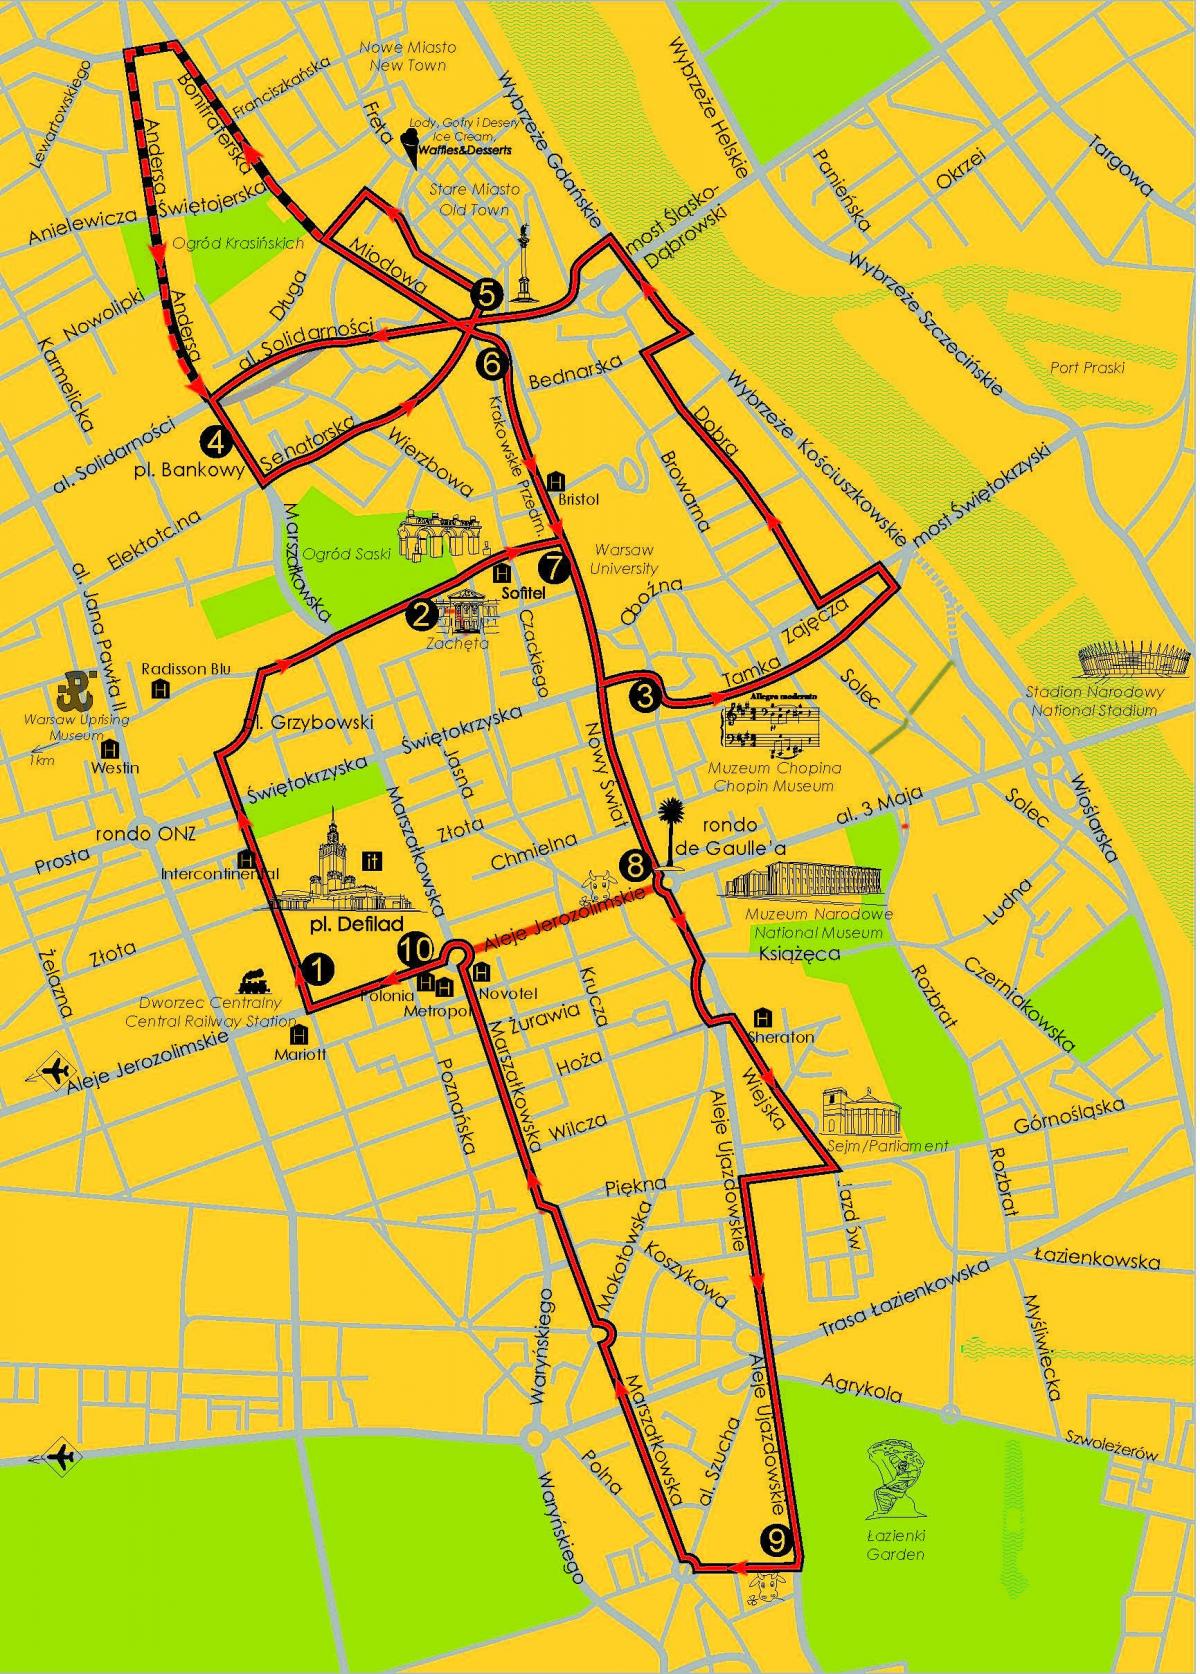 Mapa de Varsóvia hop on hop off ônibus 